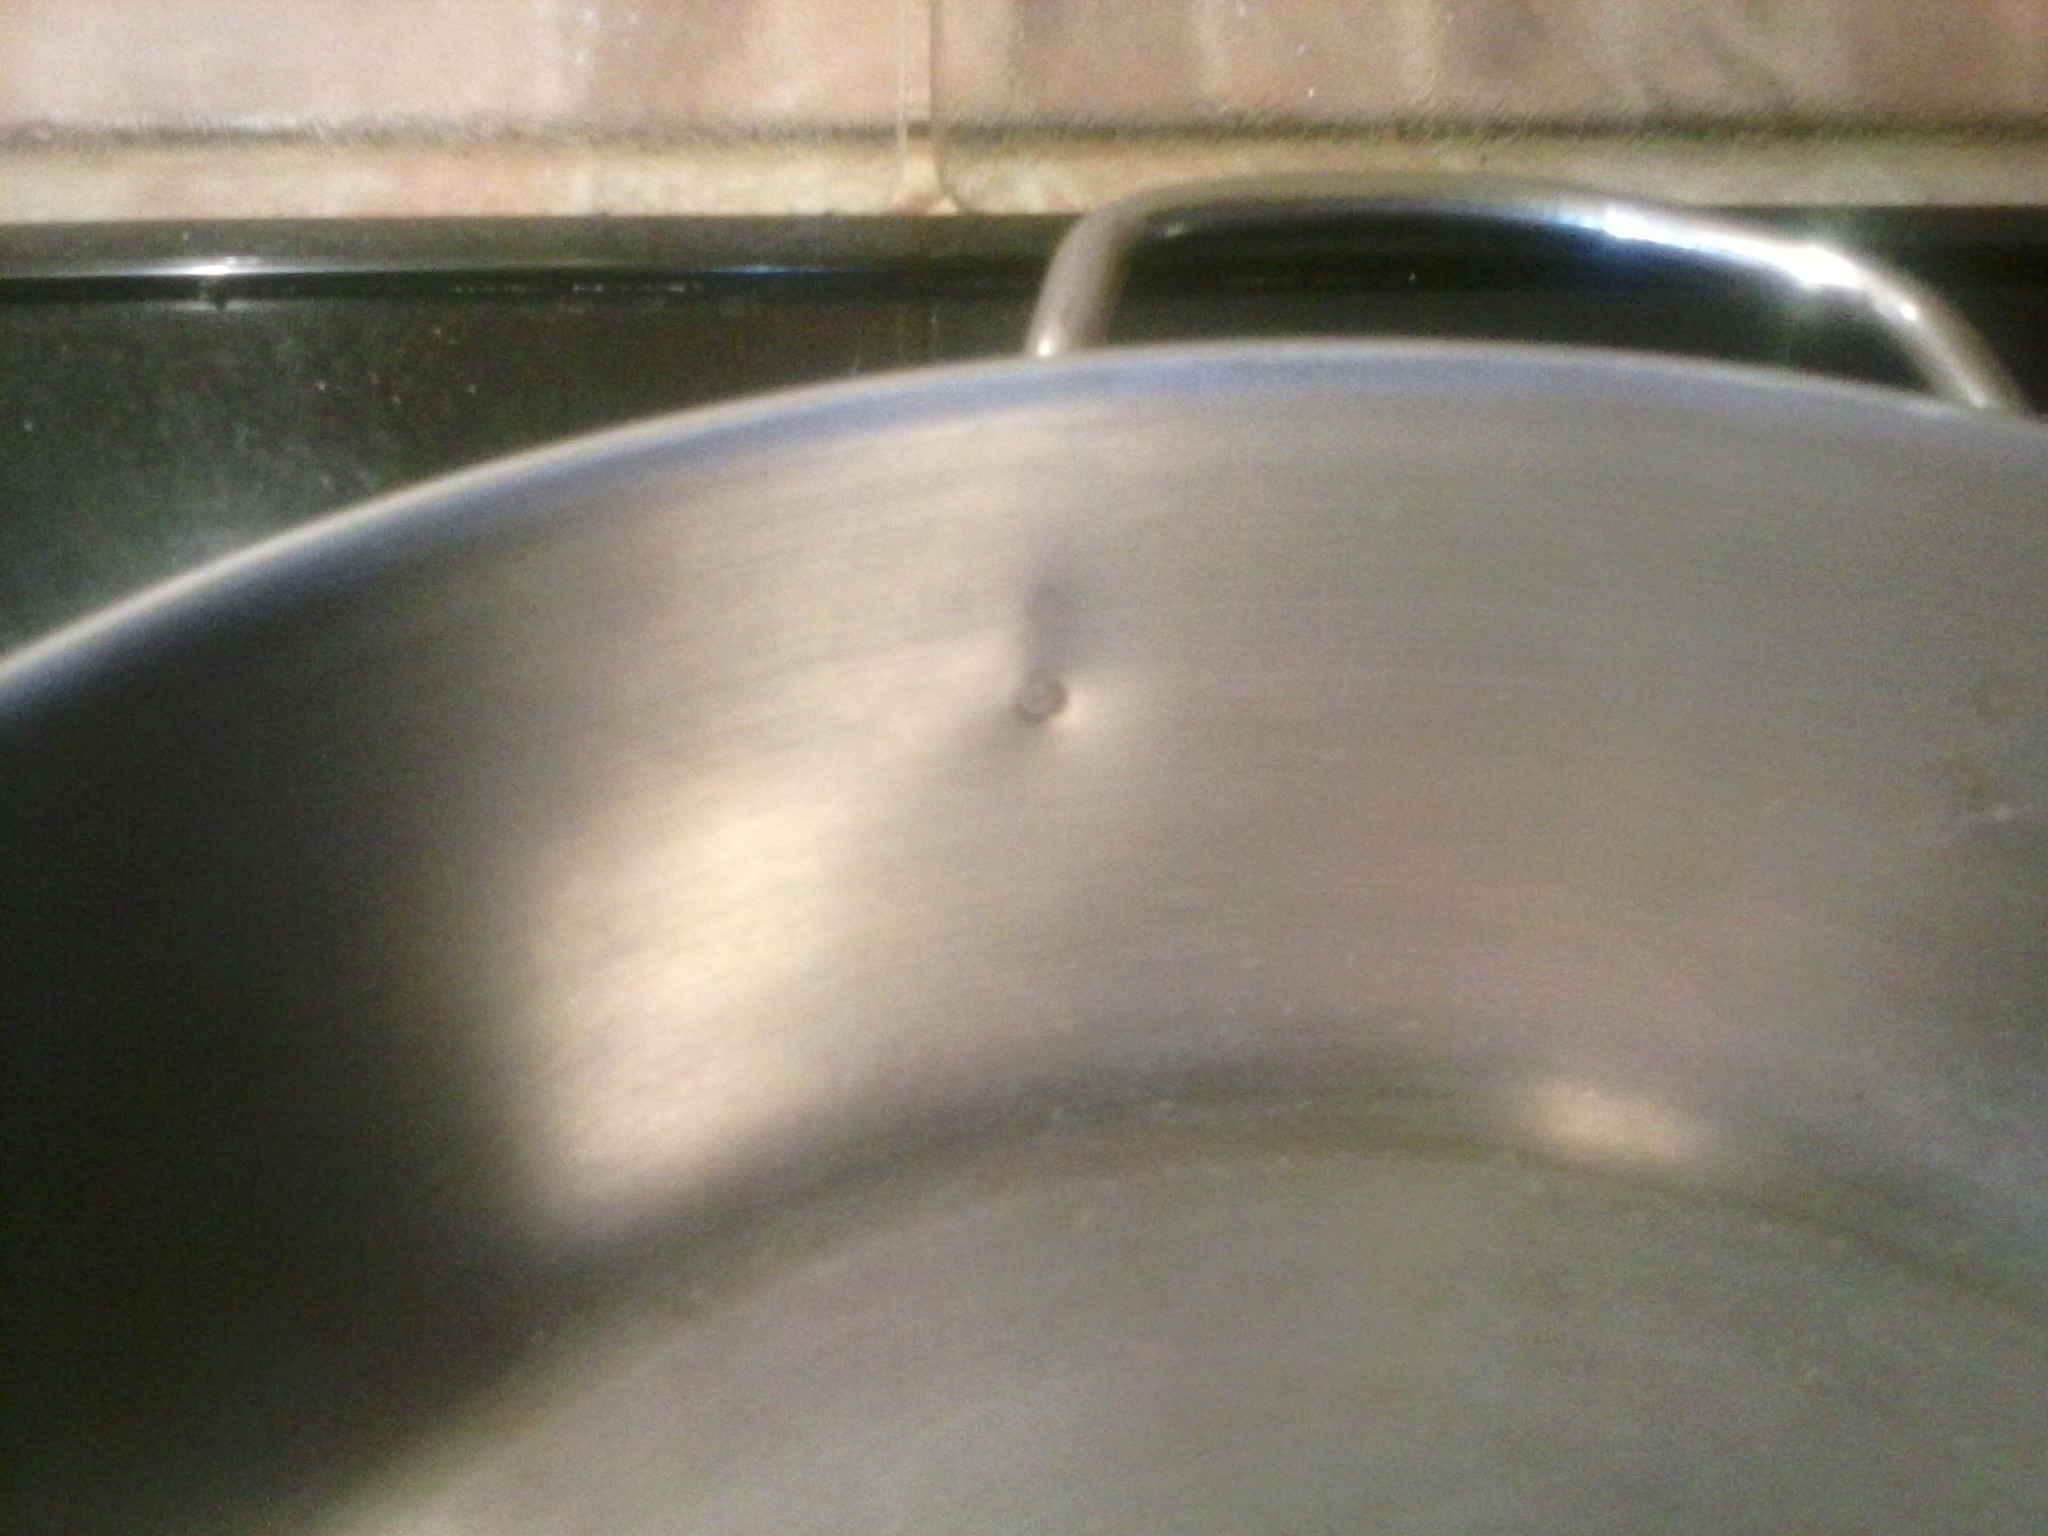 Посуда для приготовления пищи (кастрюли, сковороды, крышки к ним) (2)